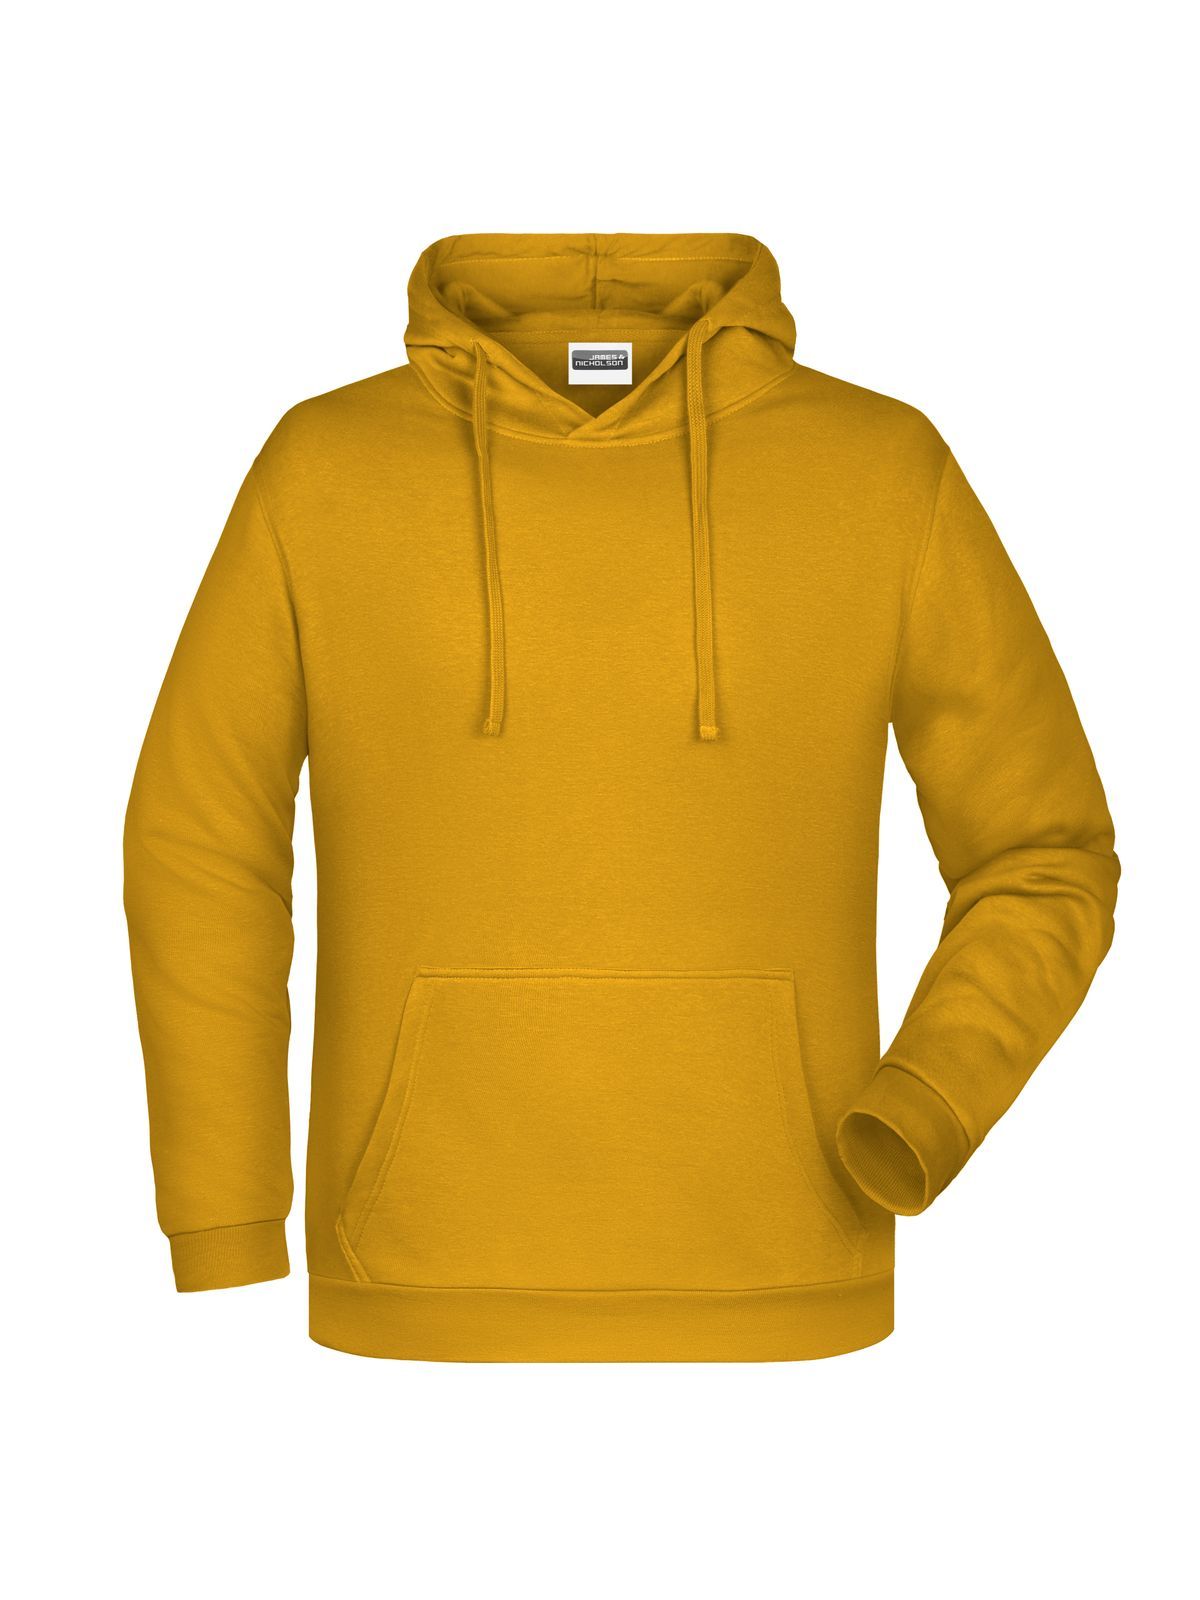 basic-hoody-man-gold-yellow.webp